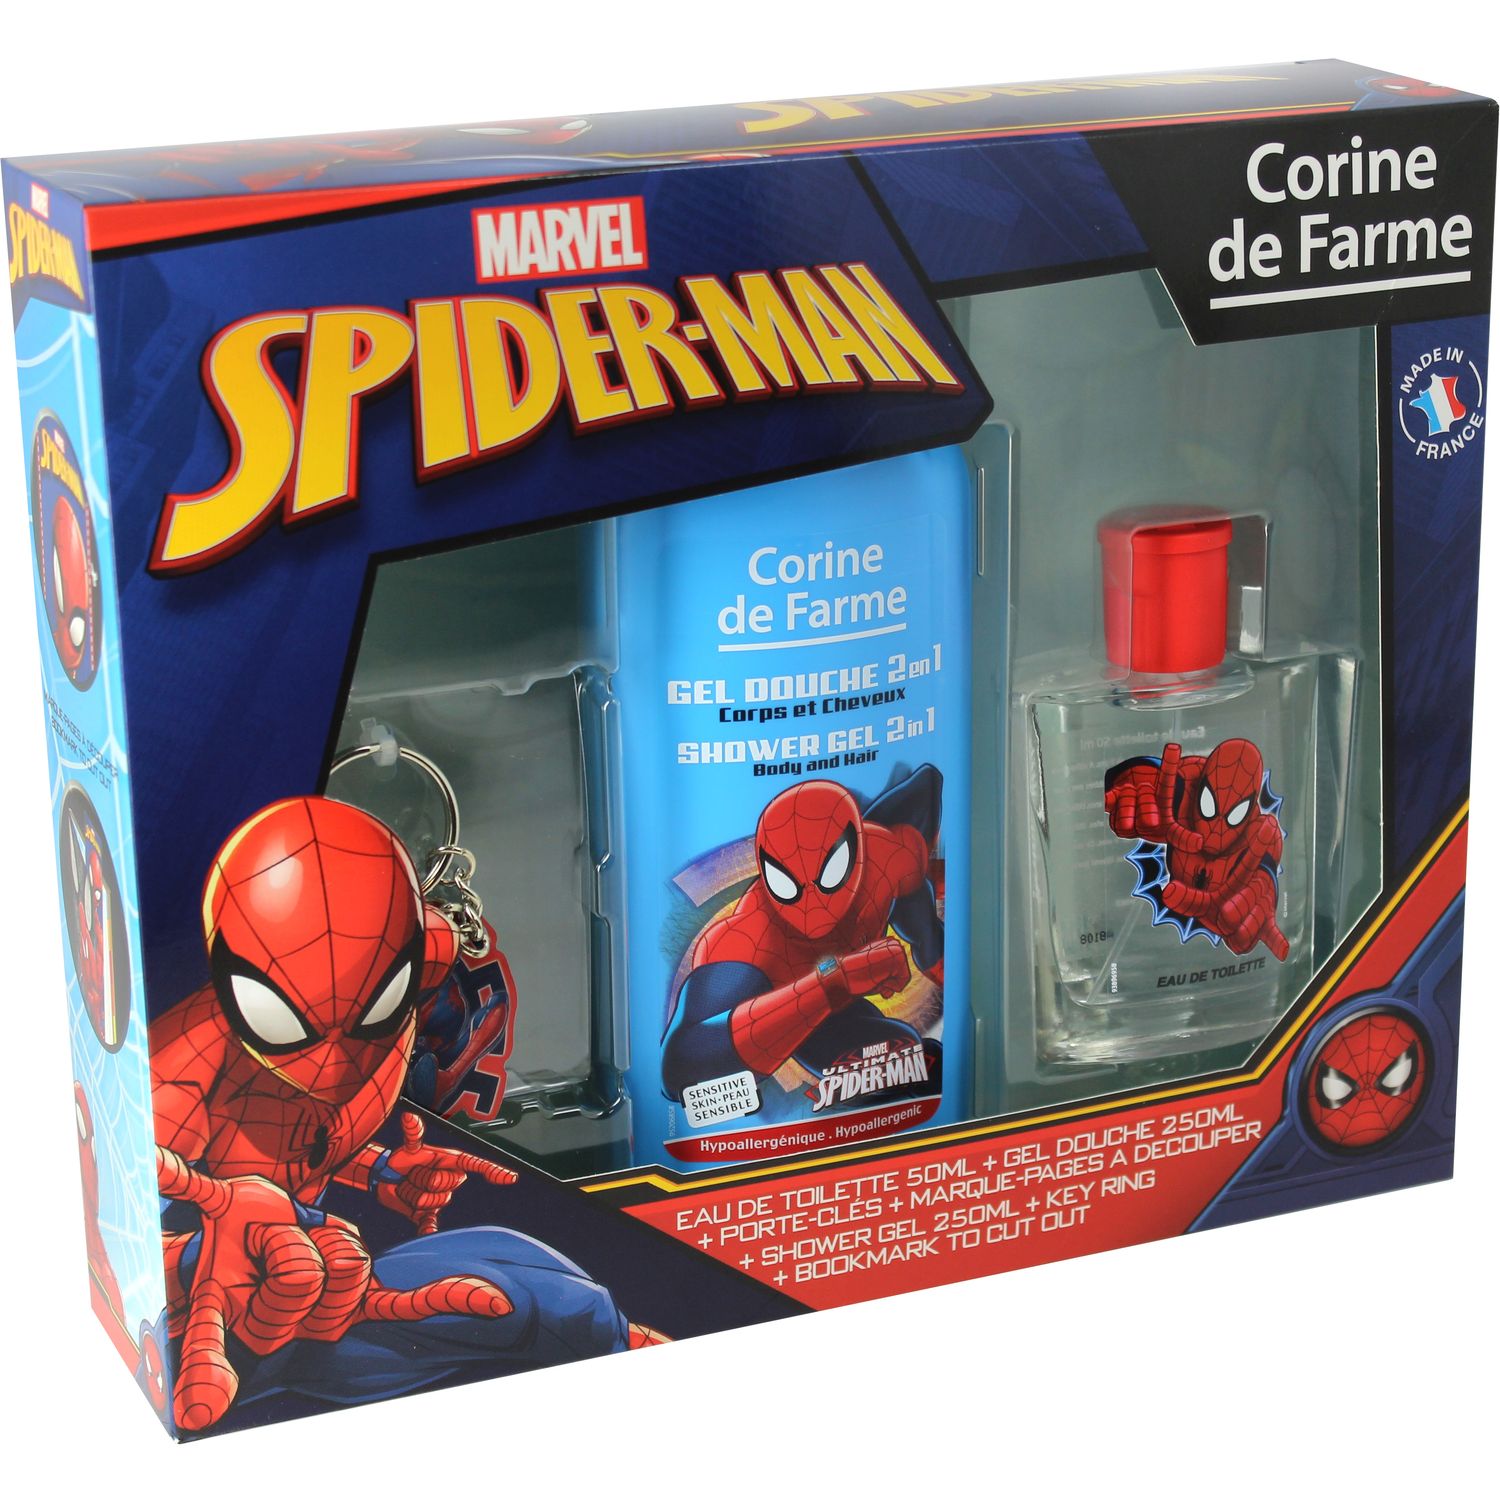 Marvel Spiderman Toilet Bag Set coffret cadeau pour enfant